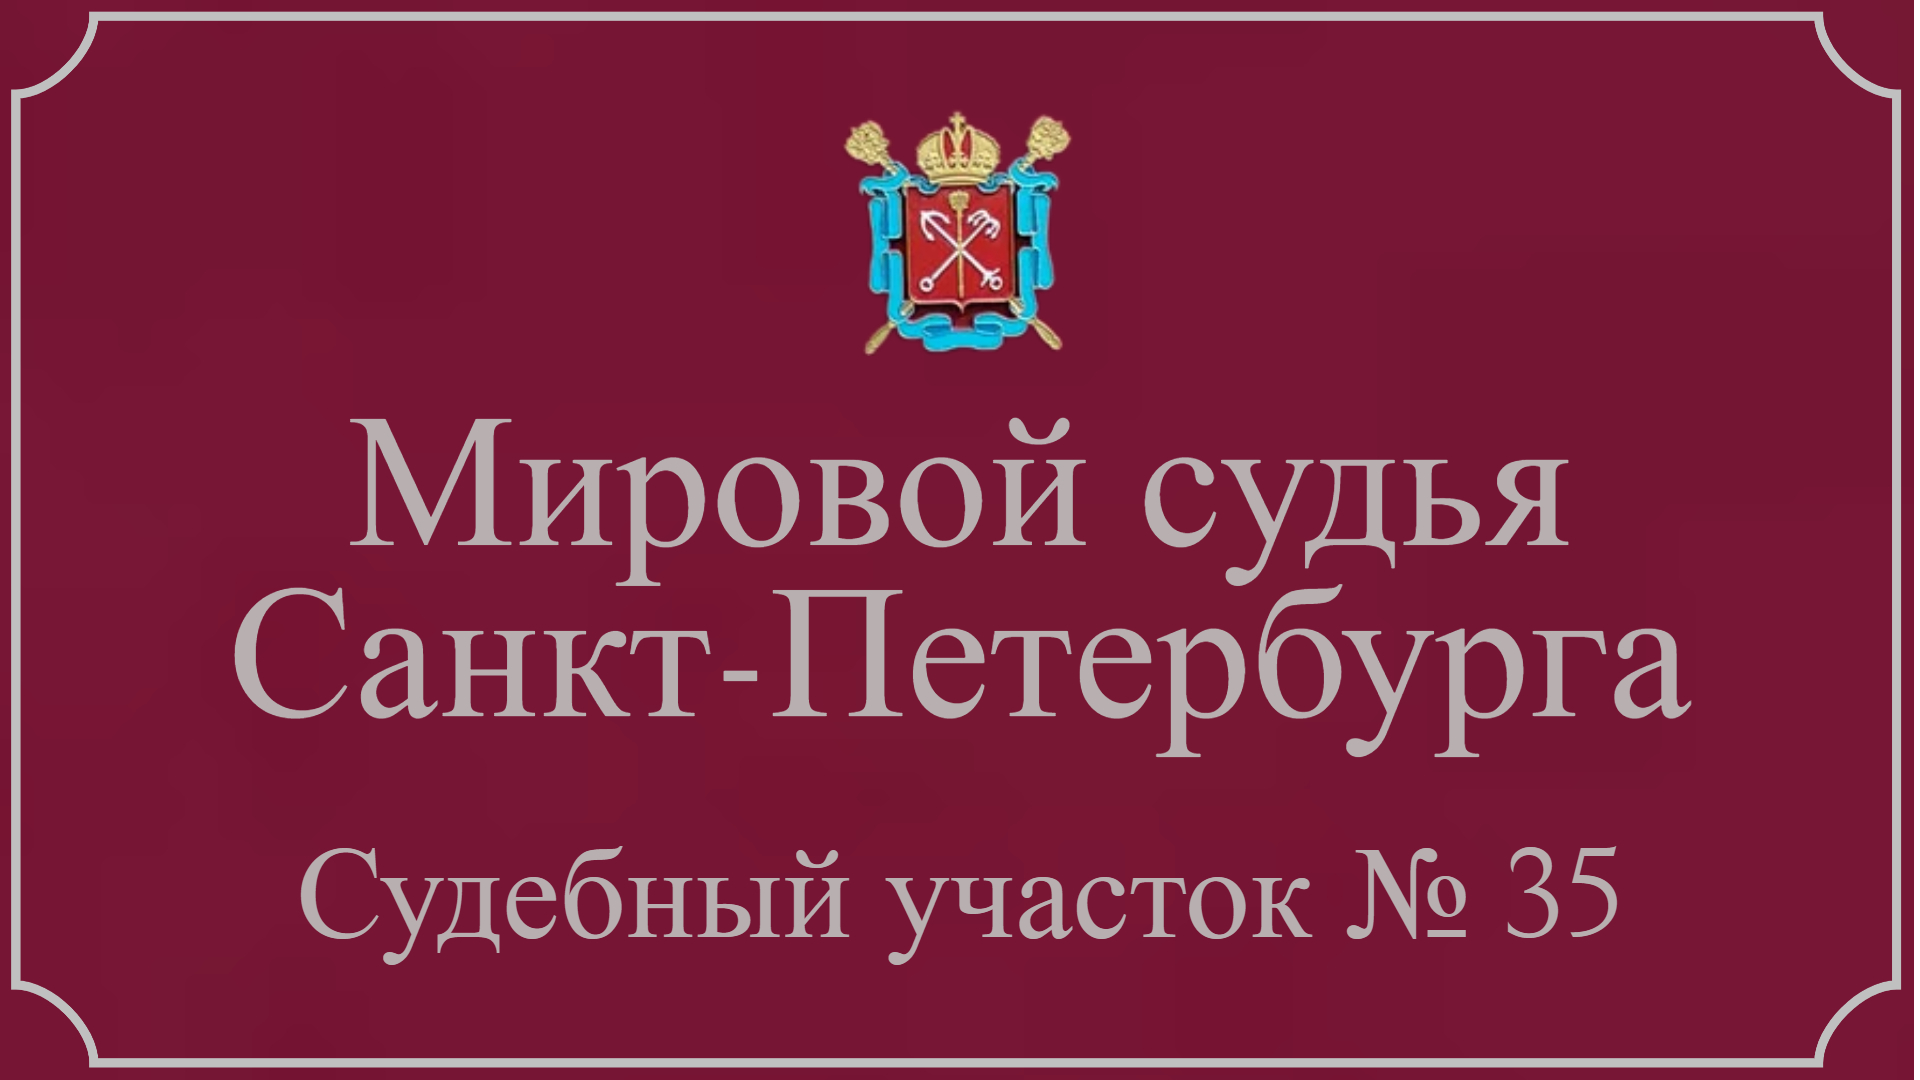 Информация по 35 судебному участку в Санкт-Петербурге.